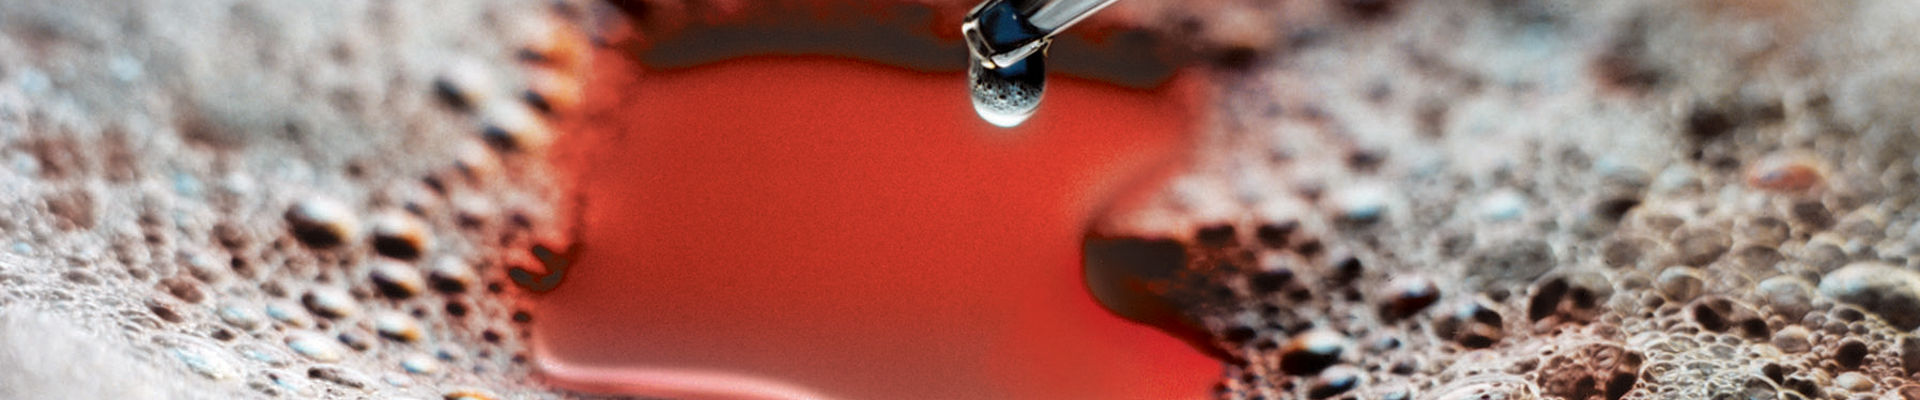 Eyedropper dispenses silicone antifoam into liquid